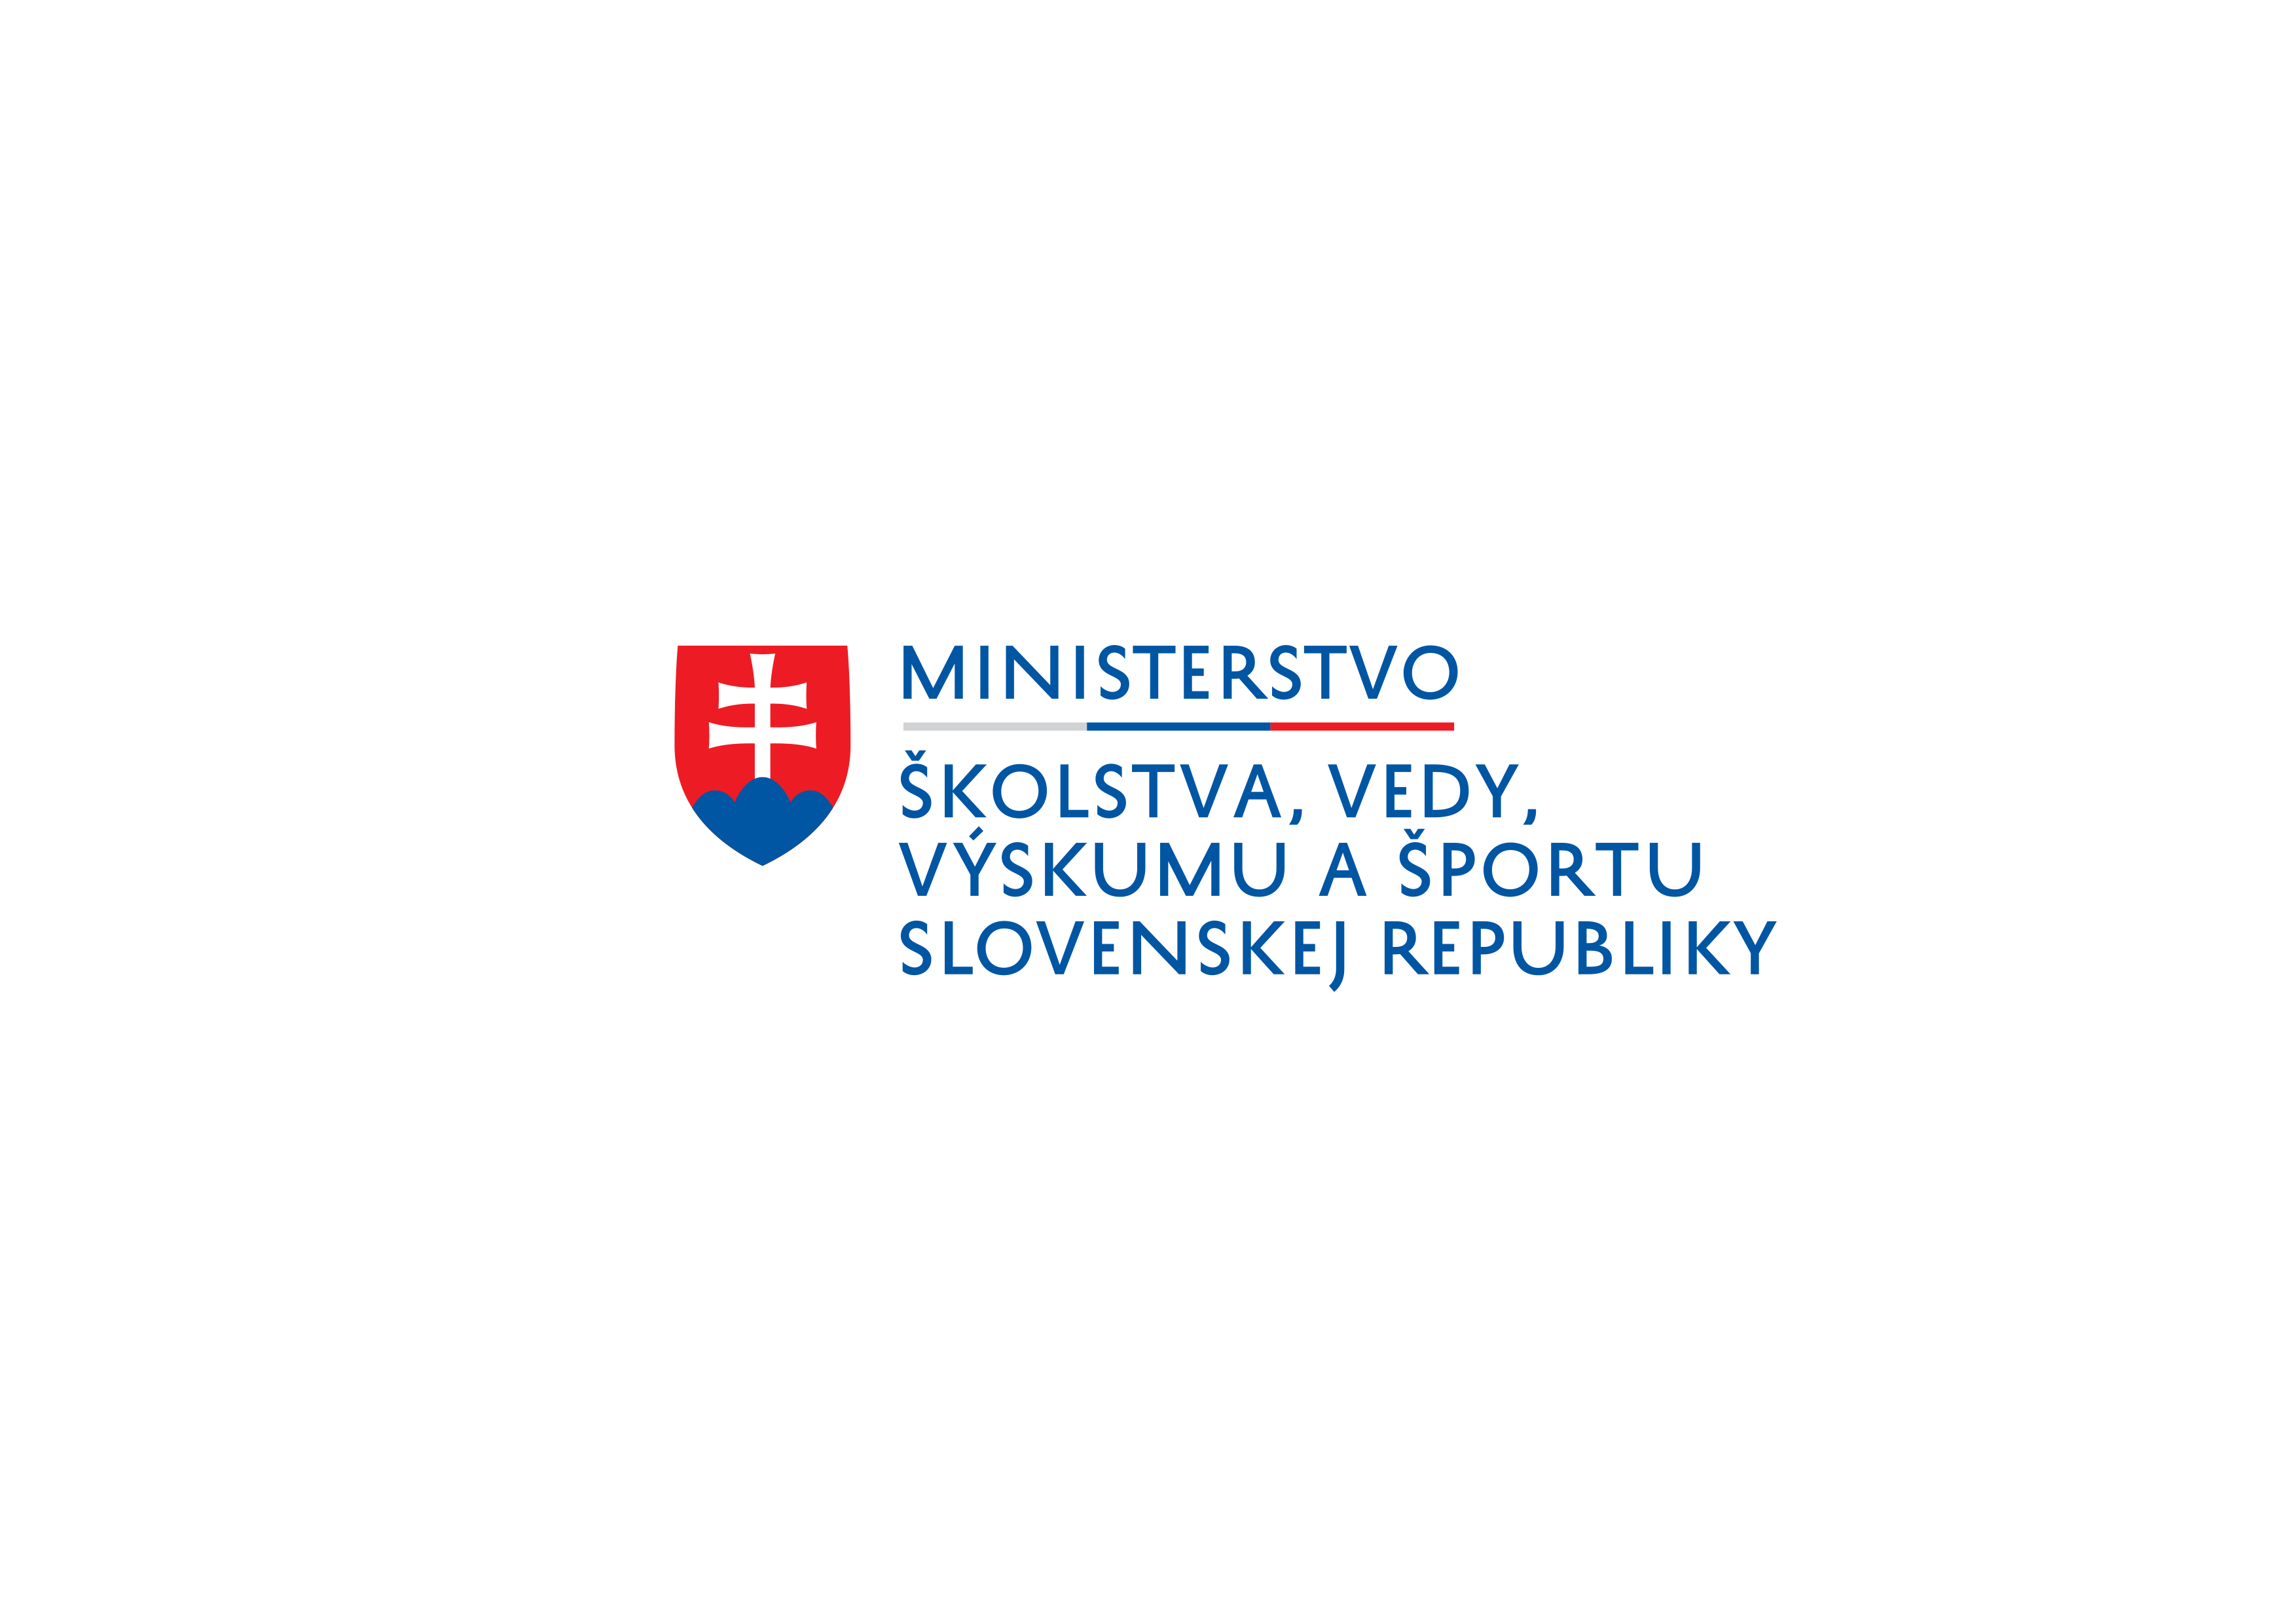 https://www.minedu.sk/data/files/10937_logo-ministerstva.jpg